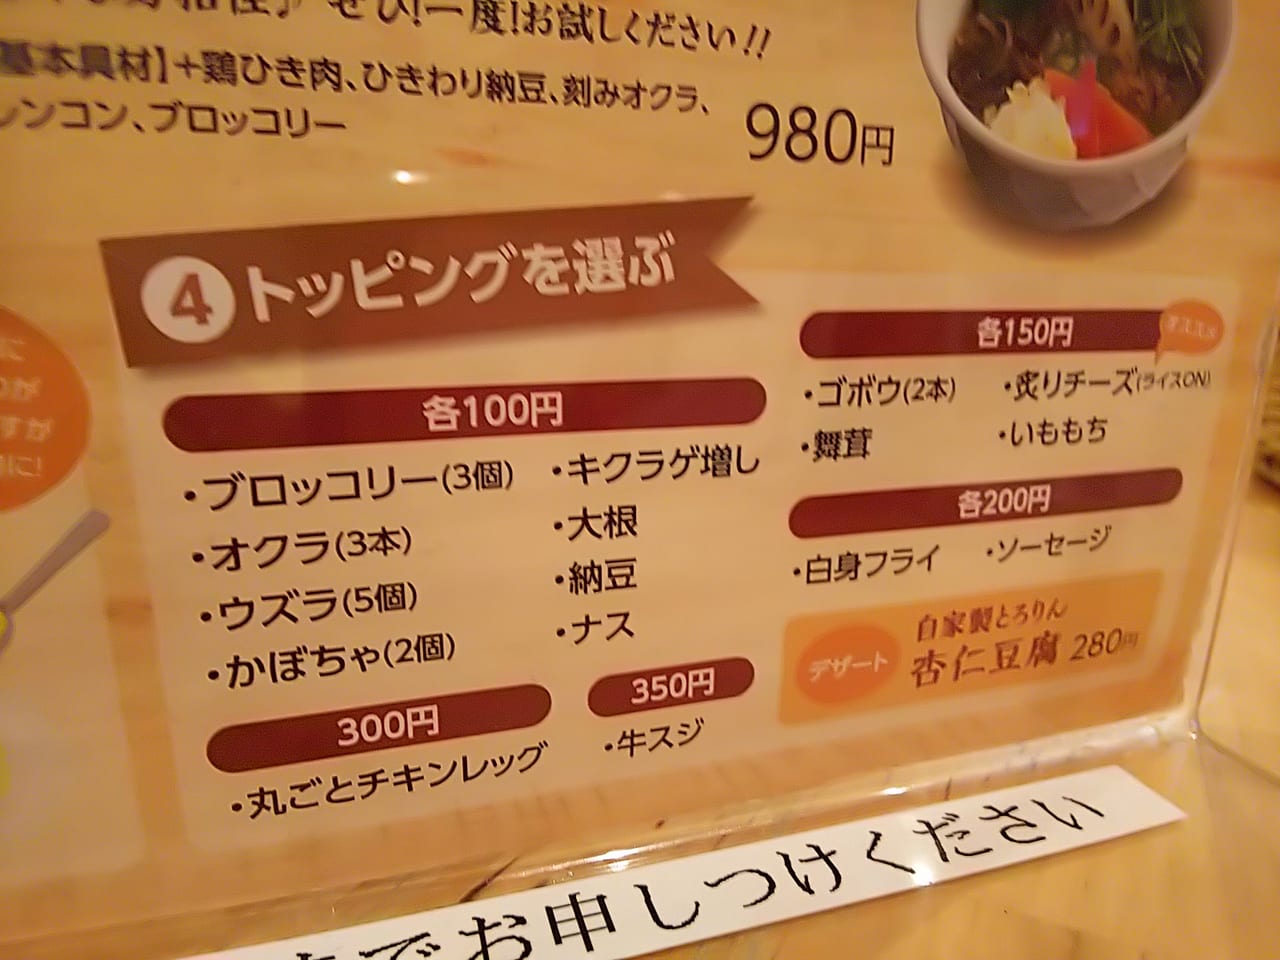 『札幌スープカリー荒谷商店』